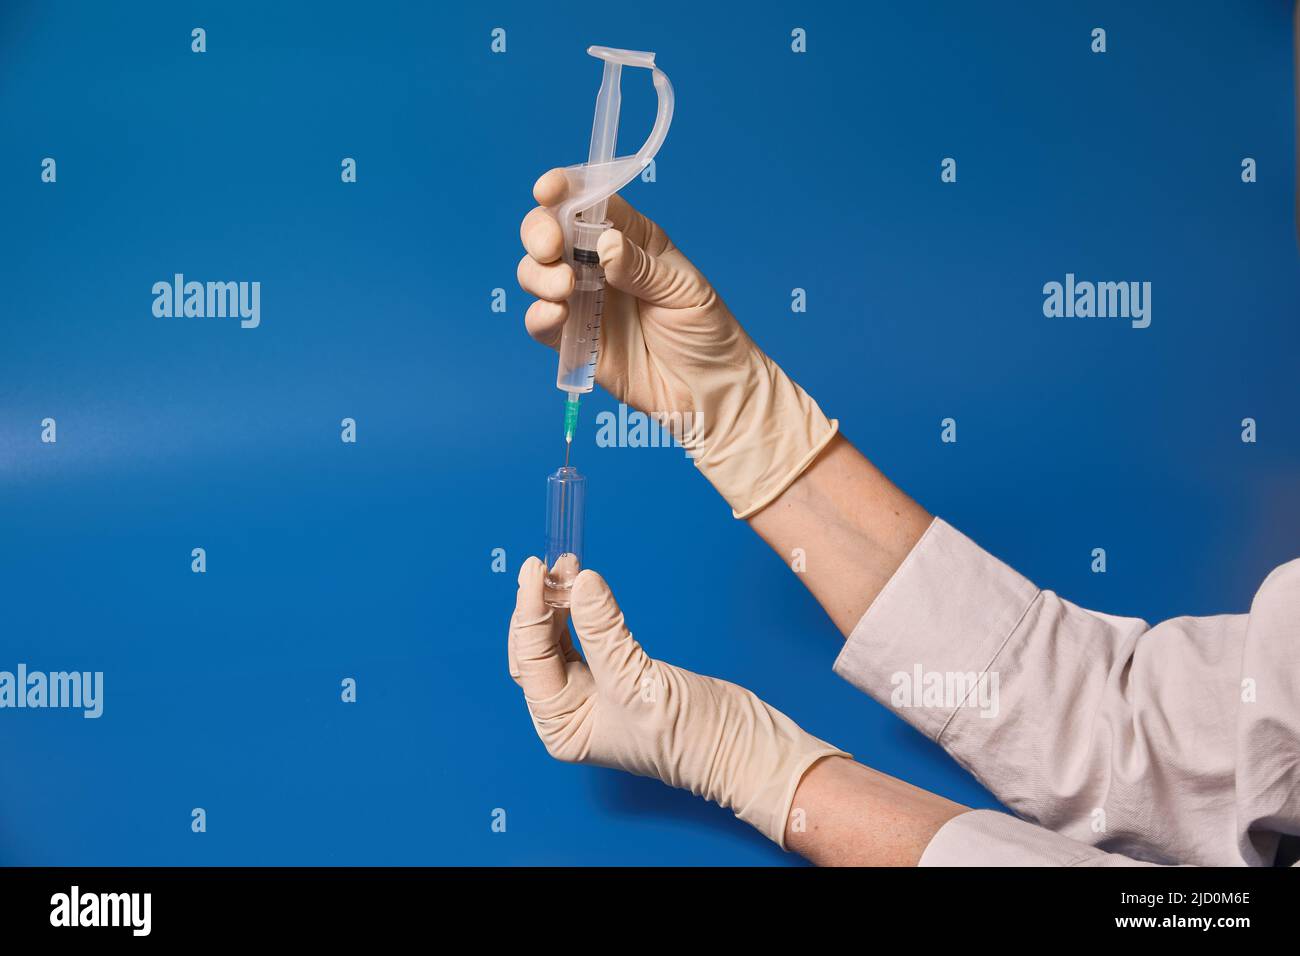 Gloved hand holding syringe on blue background  Stock Photo